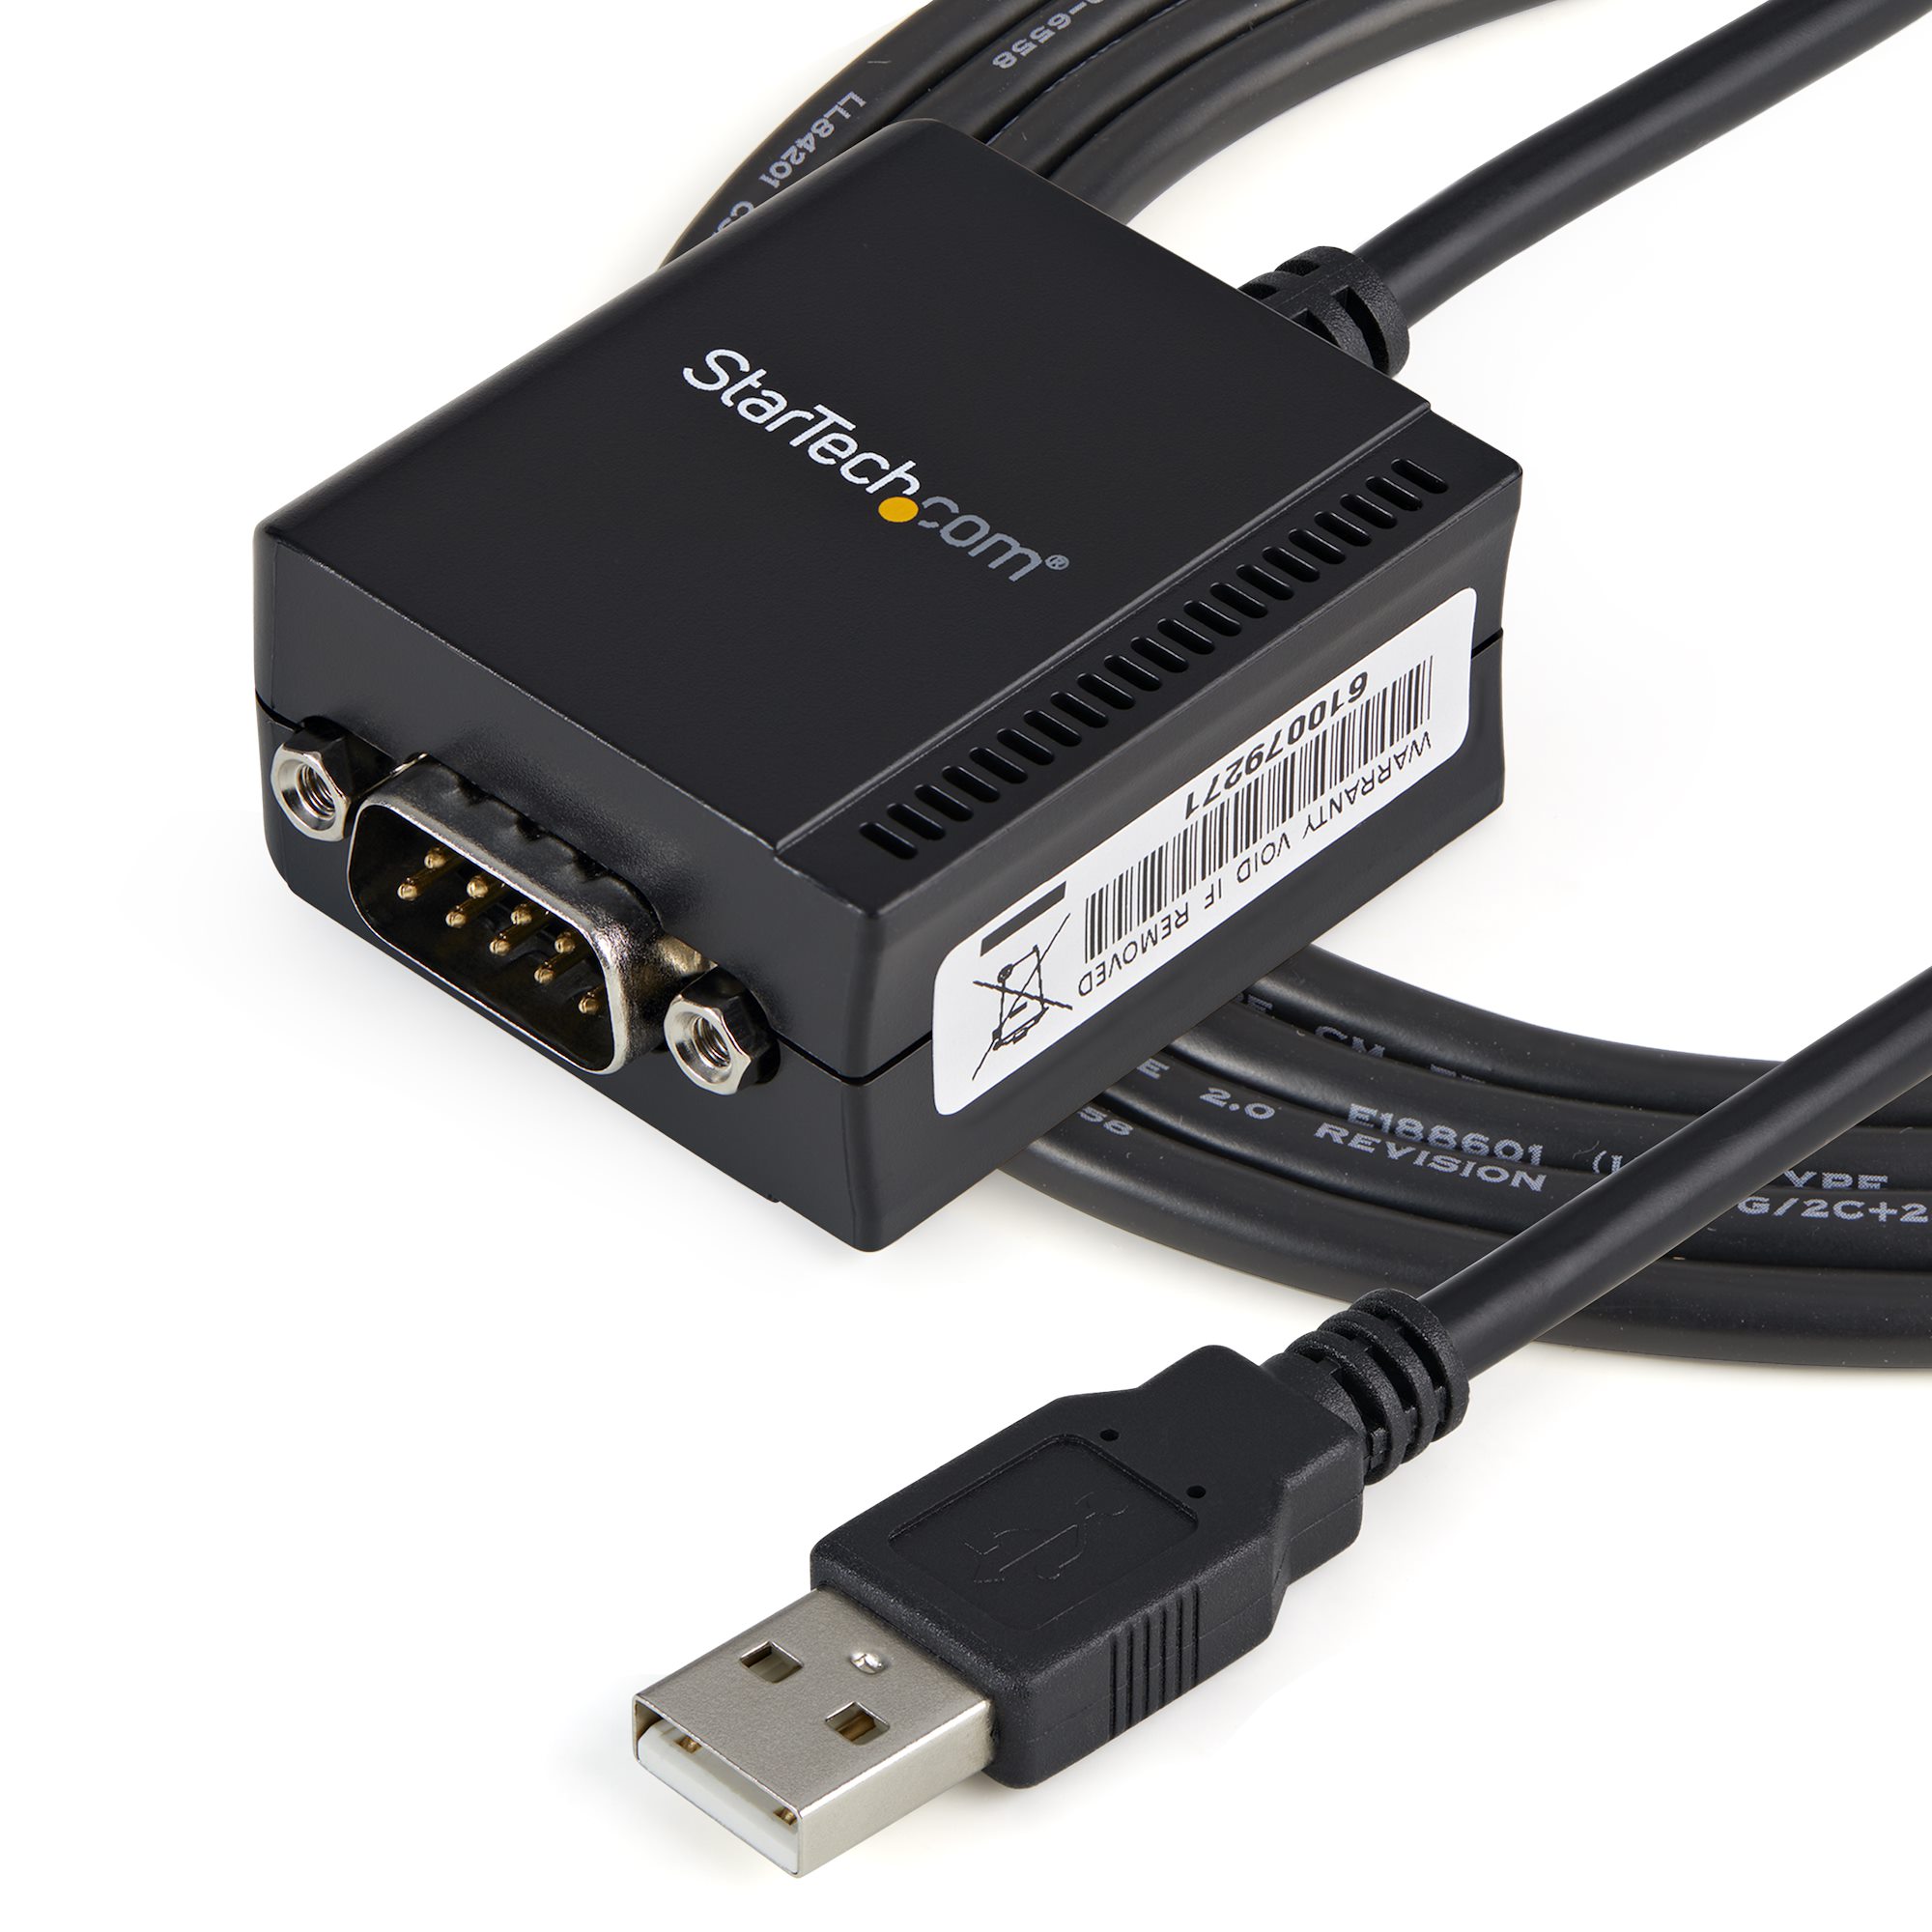 USB RS232Cシリアル変換ケーブル COMポート番号保持機能付き シリアルカード  アダプタ 日本